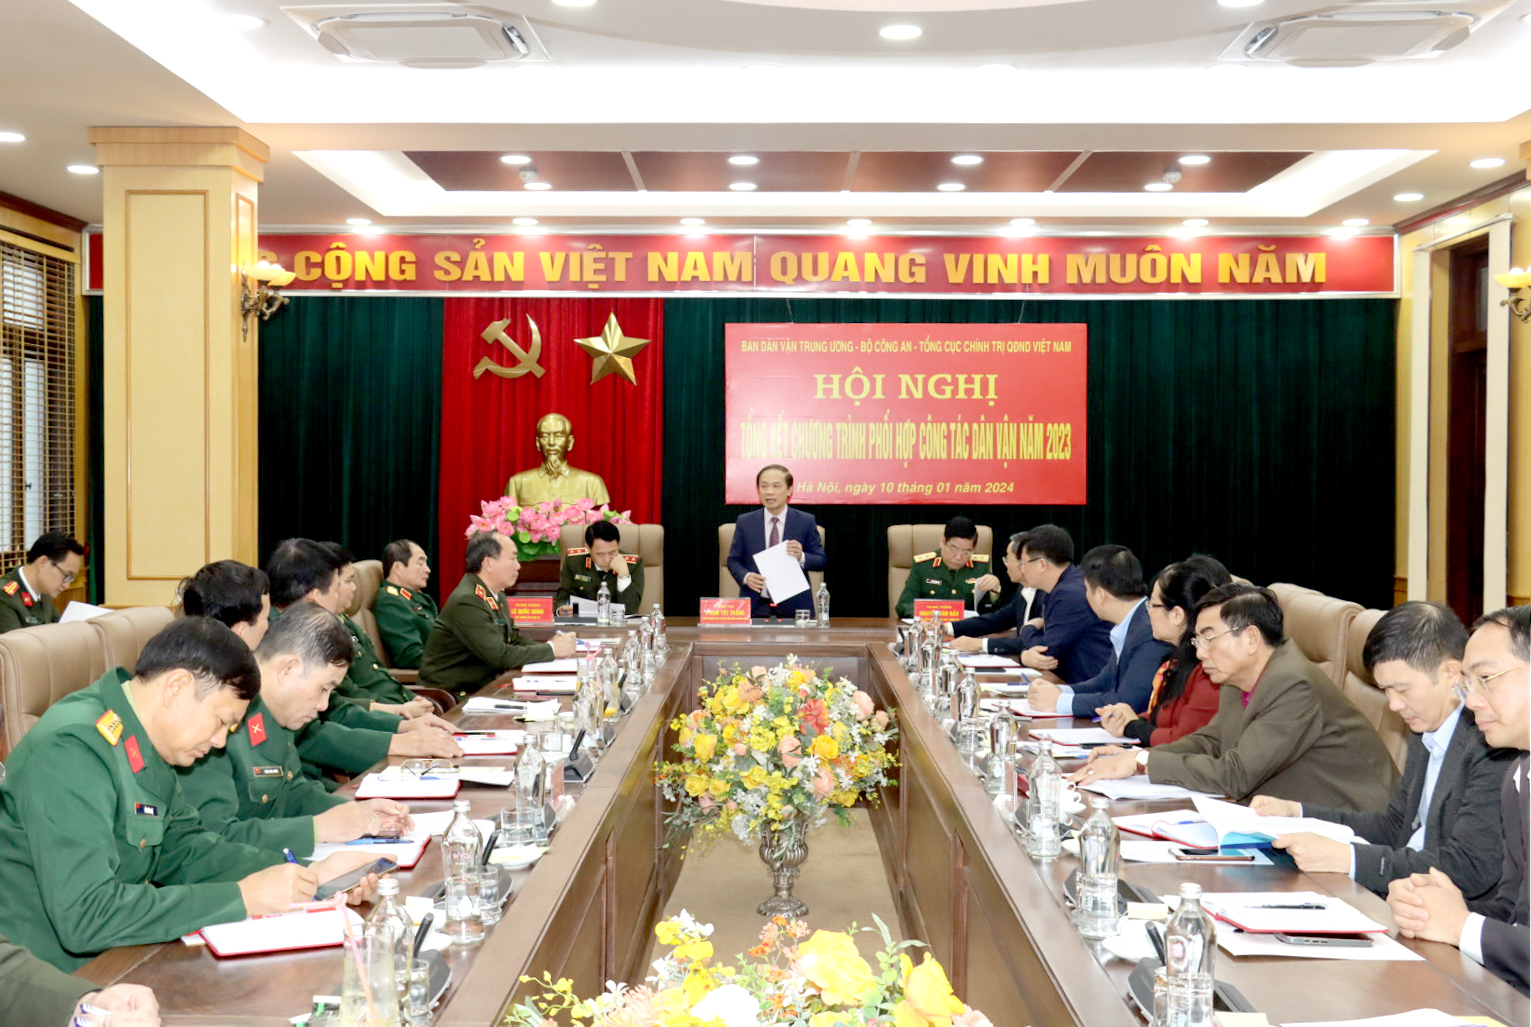 Tổng kết Chương trình phối hợp giữa Ban Dân vận Trung ương với Bộ Công an và Tổng cục Chính trị Quân đội nhân dân Việt Nam năm 2023